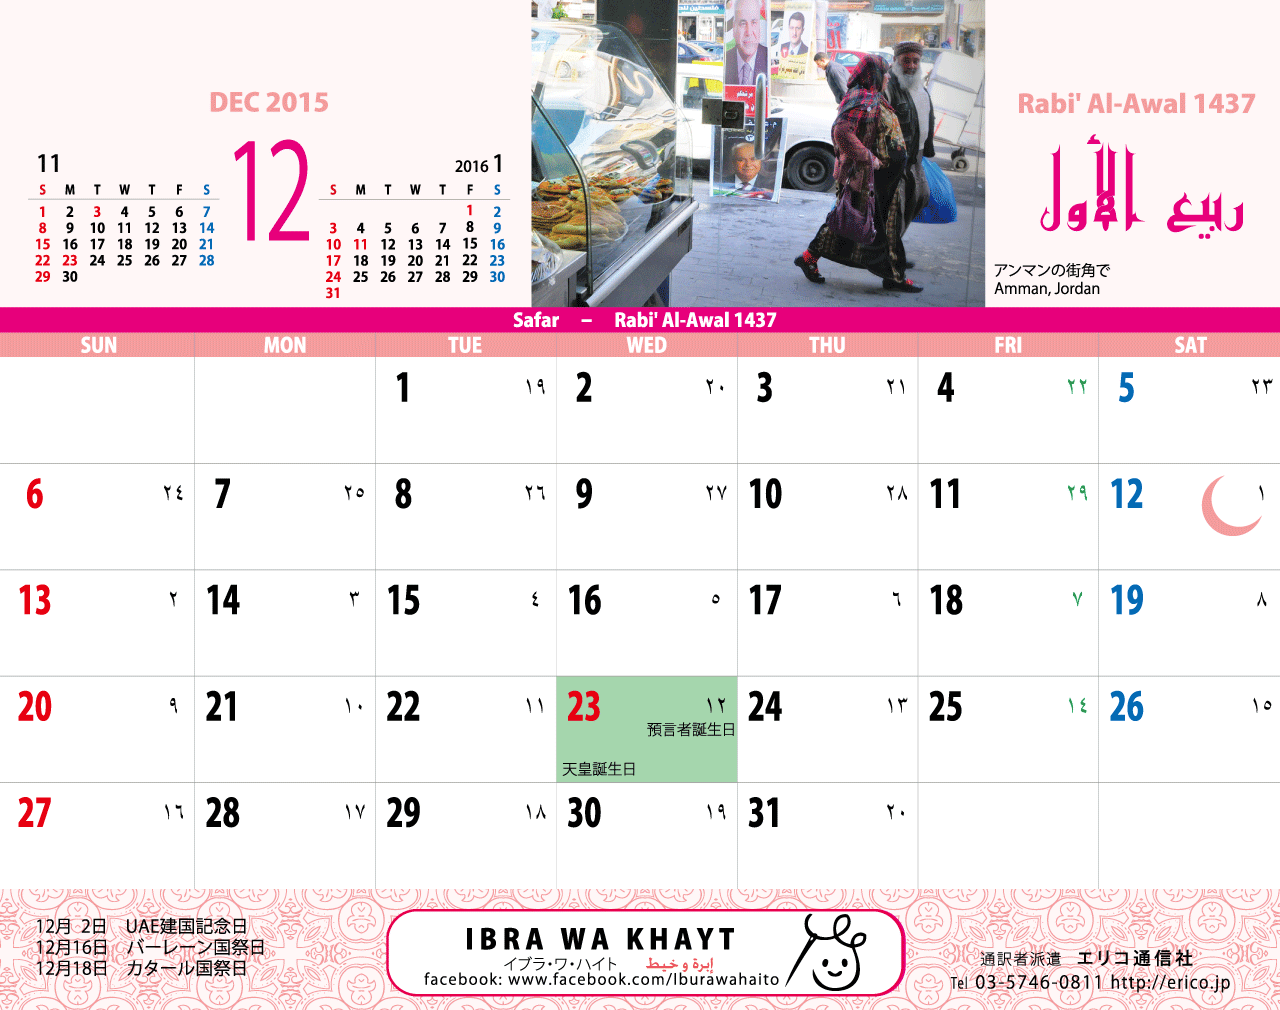 イスラム暦付カレンダー2014年版 イスラム暦付カレンダー